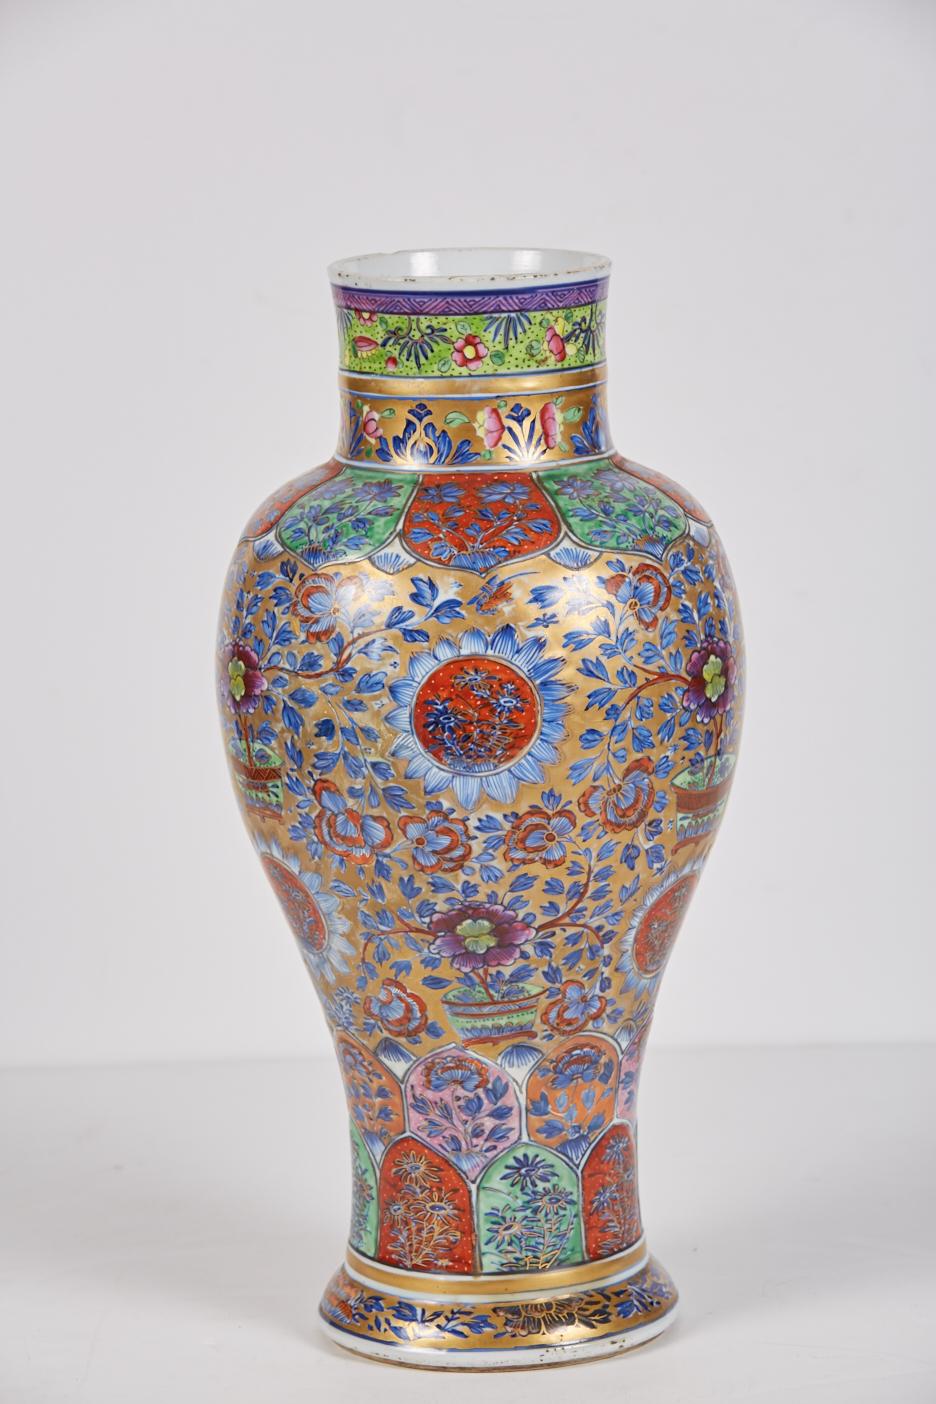 Sehr große Vase aus chinesischem Exportporzellan des 18. Jahrhunderts, die im 19. Jahrhundert in England dekoriert wurde. Der Sockel hat einen Doppelkreis in Unterglasurblau mit einem nicht identifizierbaren Zeichen in der Mitte (vielleicht ein